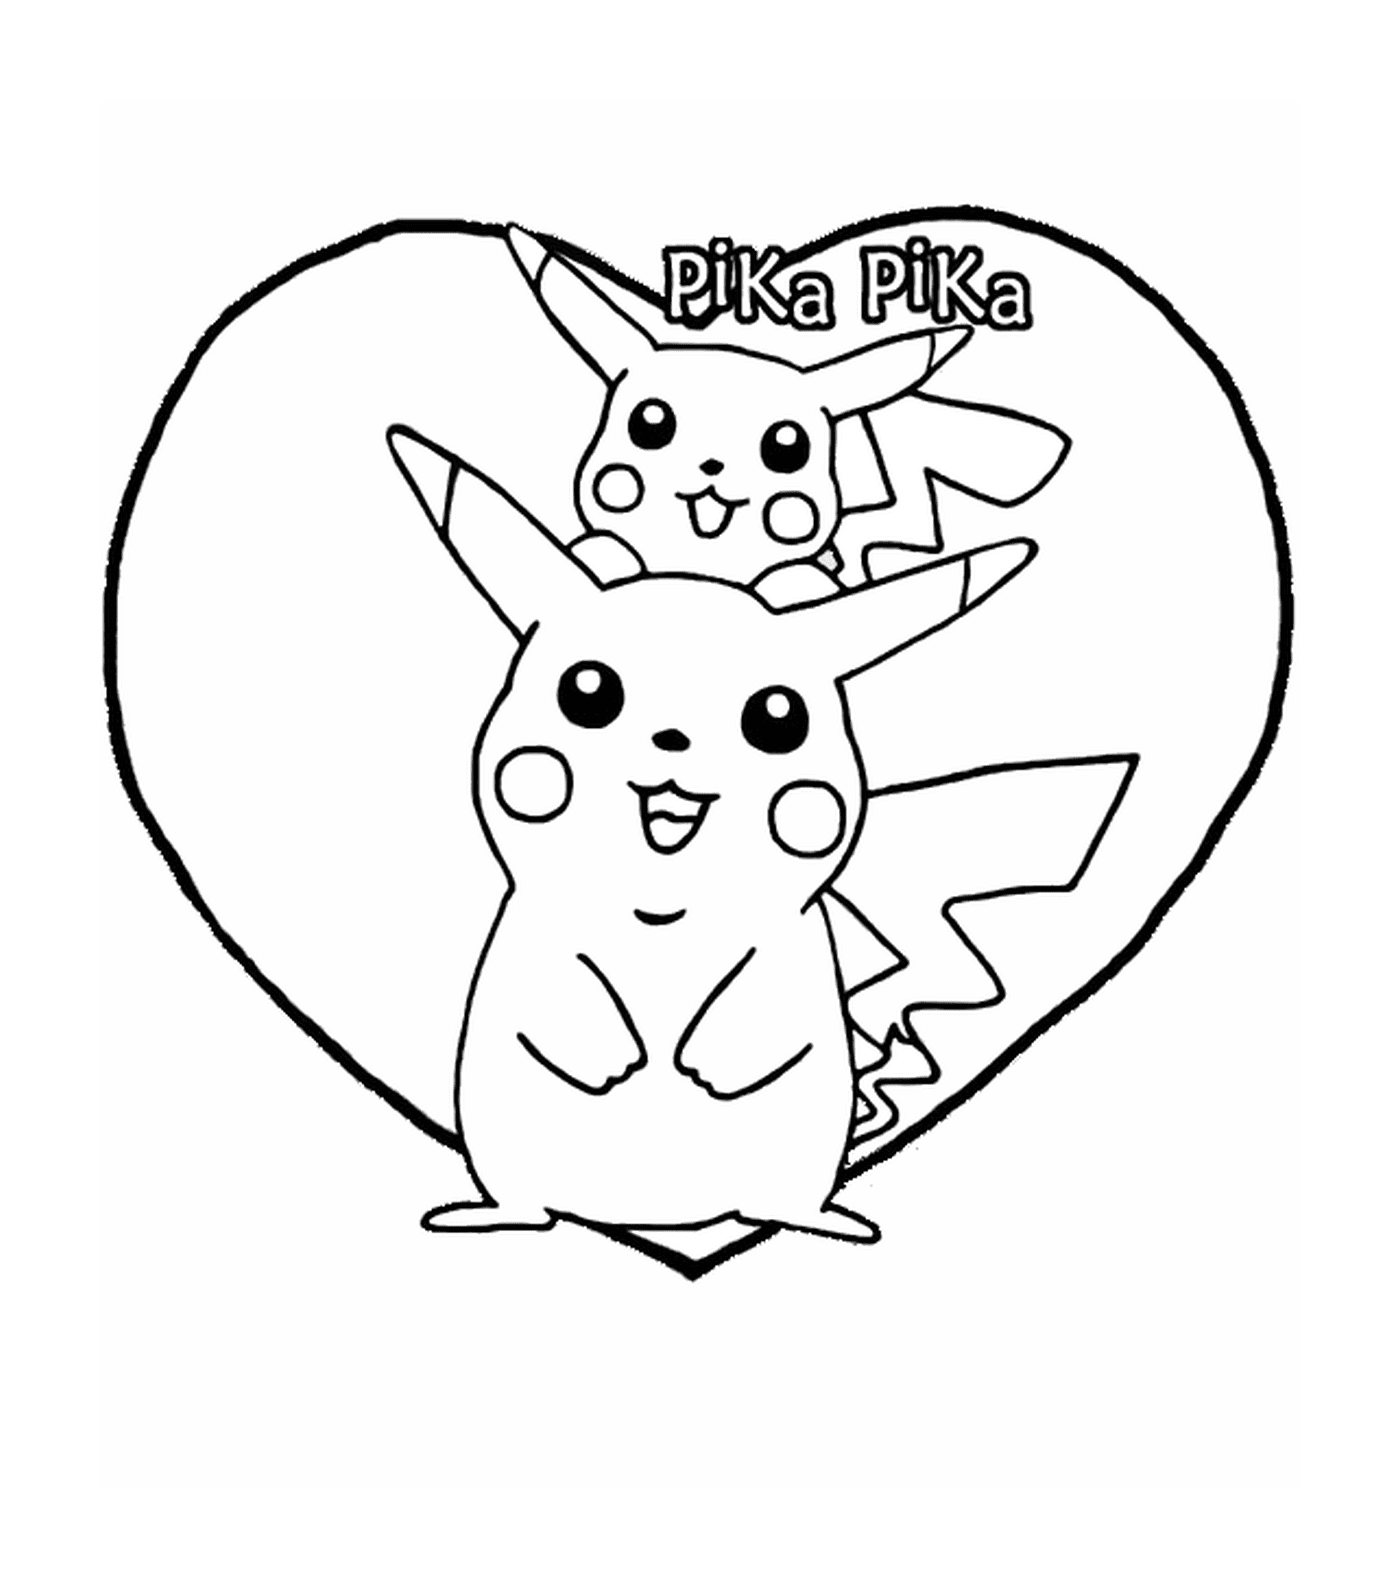  Pikachu y Pika en un corazón 